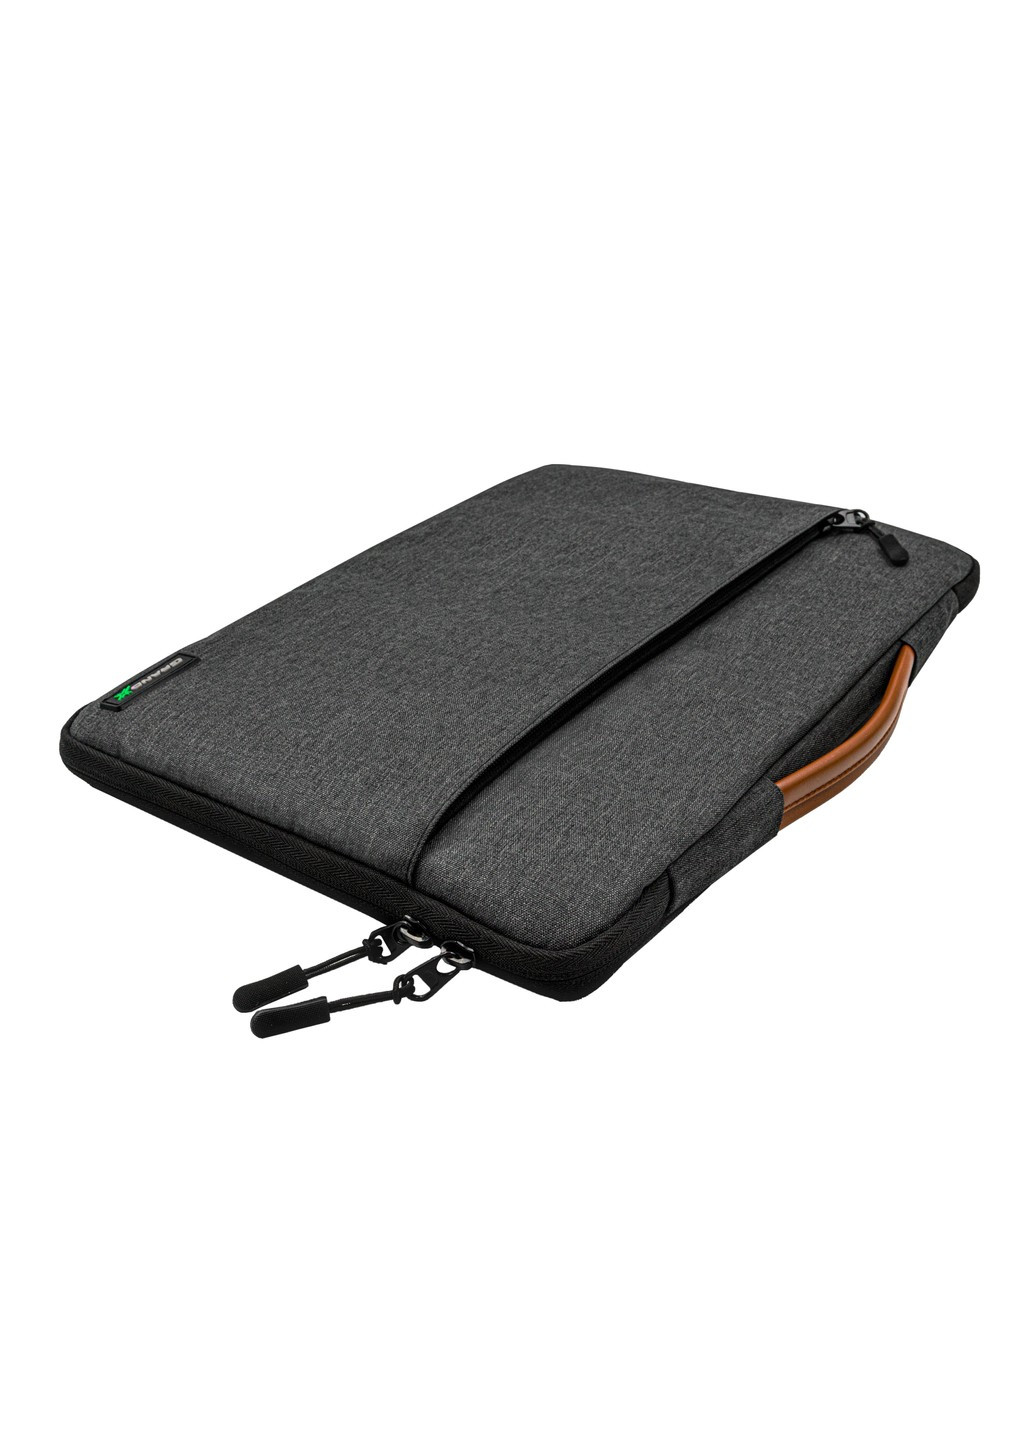 Чехол-сумка для ноутбука SLX-13D 13.3'' Dark Grey Grand-X (253750722)